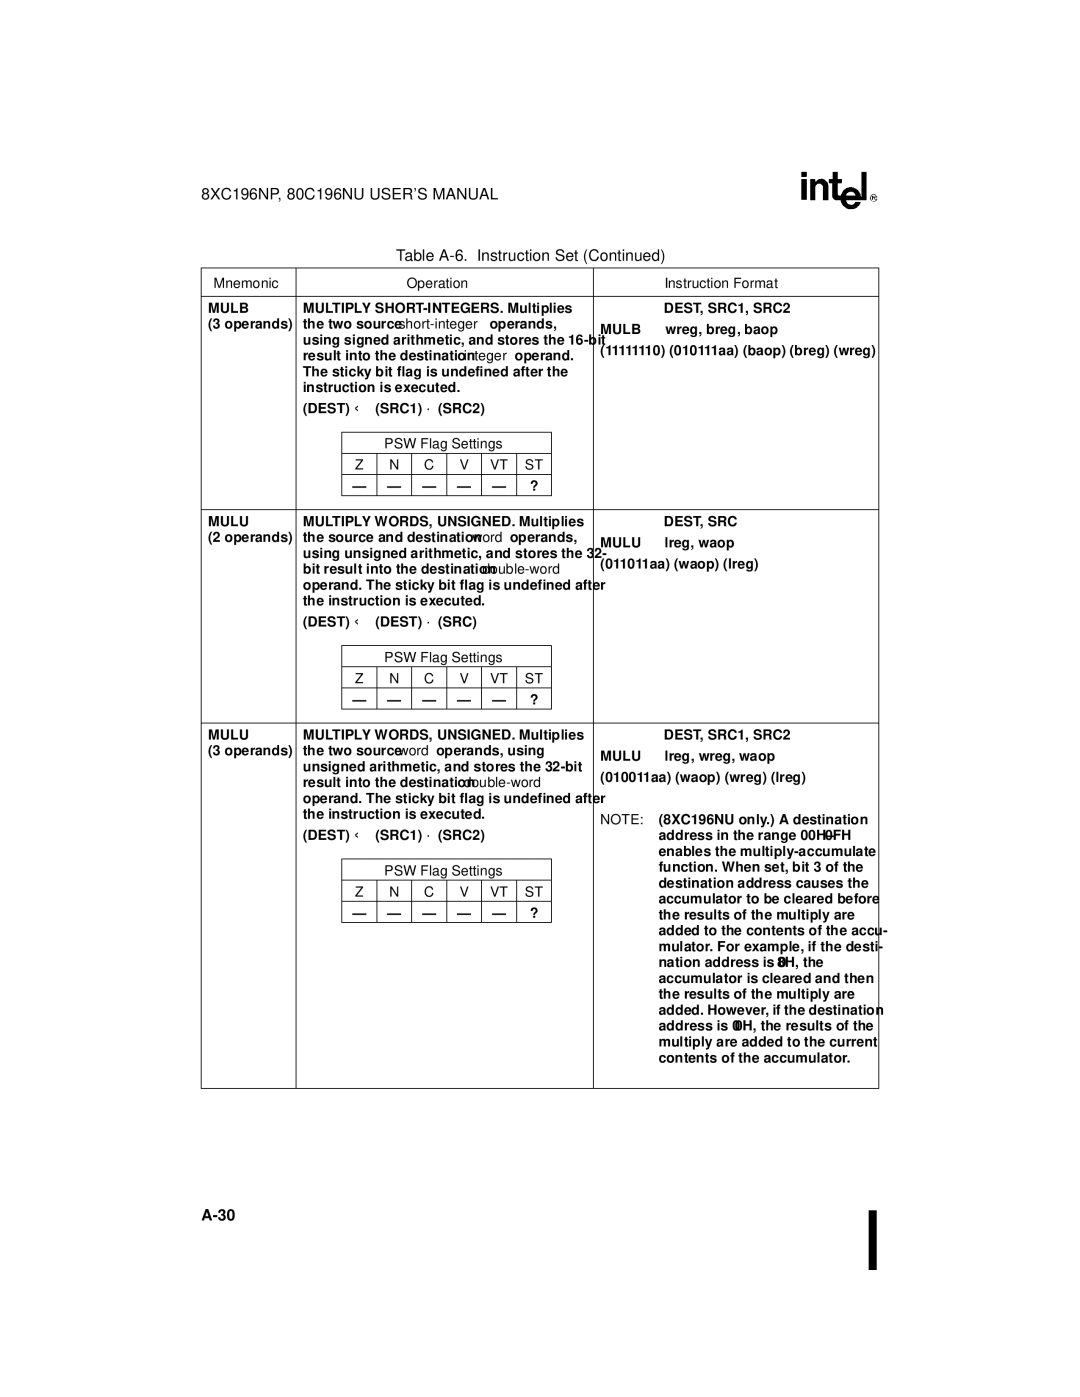 Intel Microcontroller, 80C196NU, 8XC196NP manual Mulu 